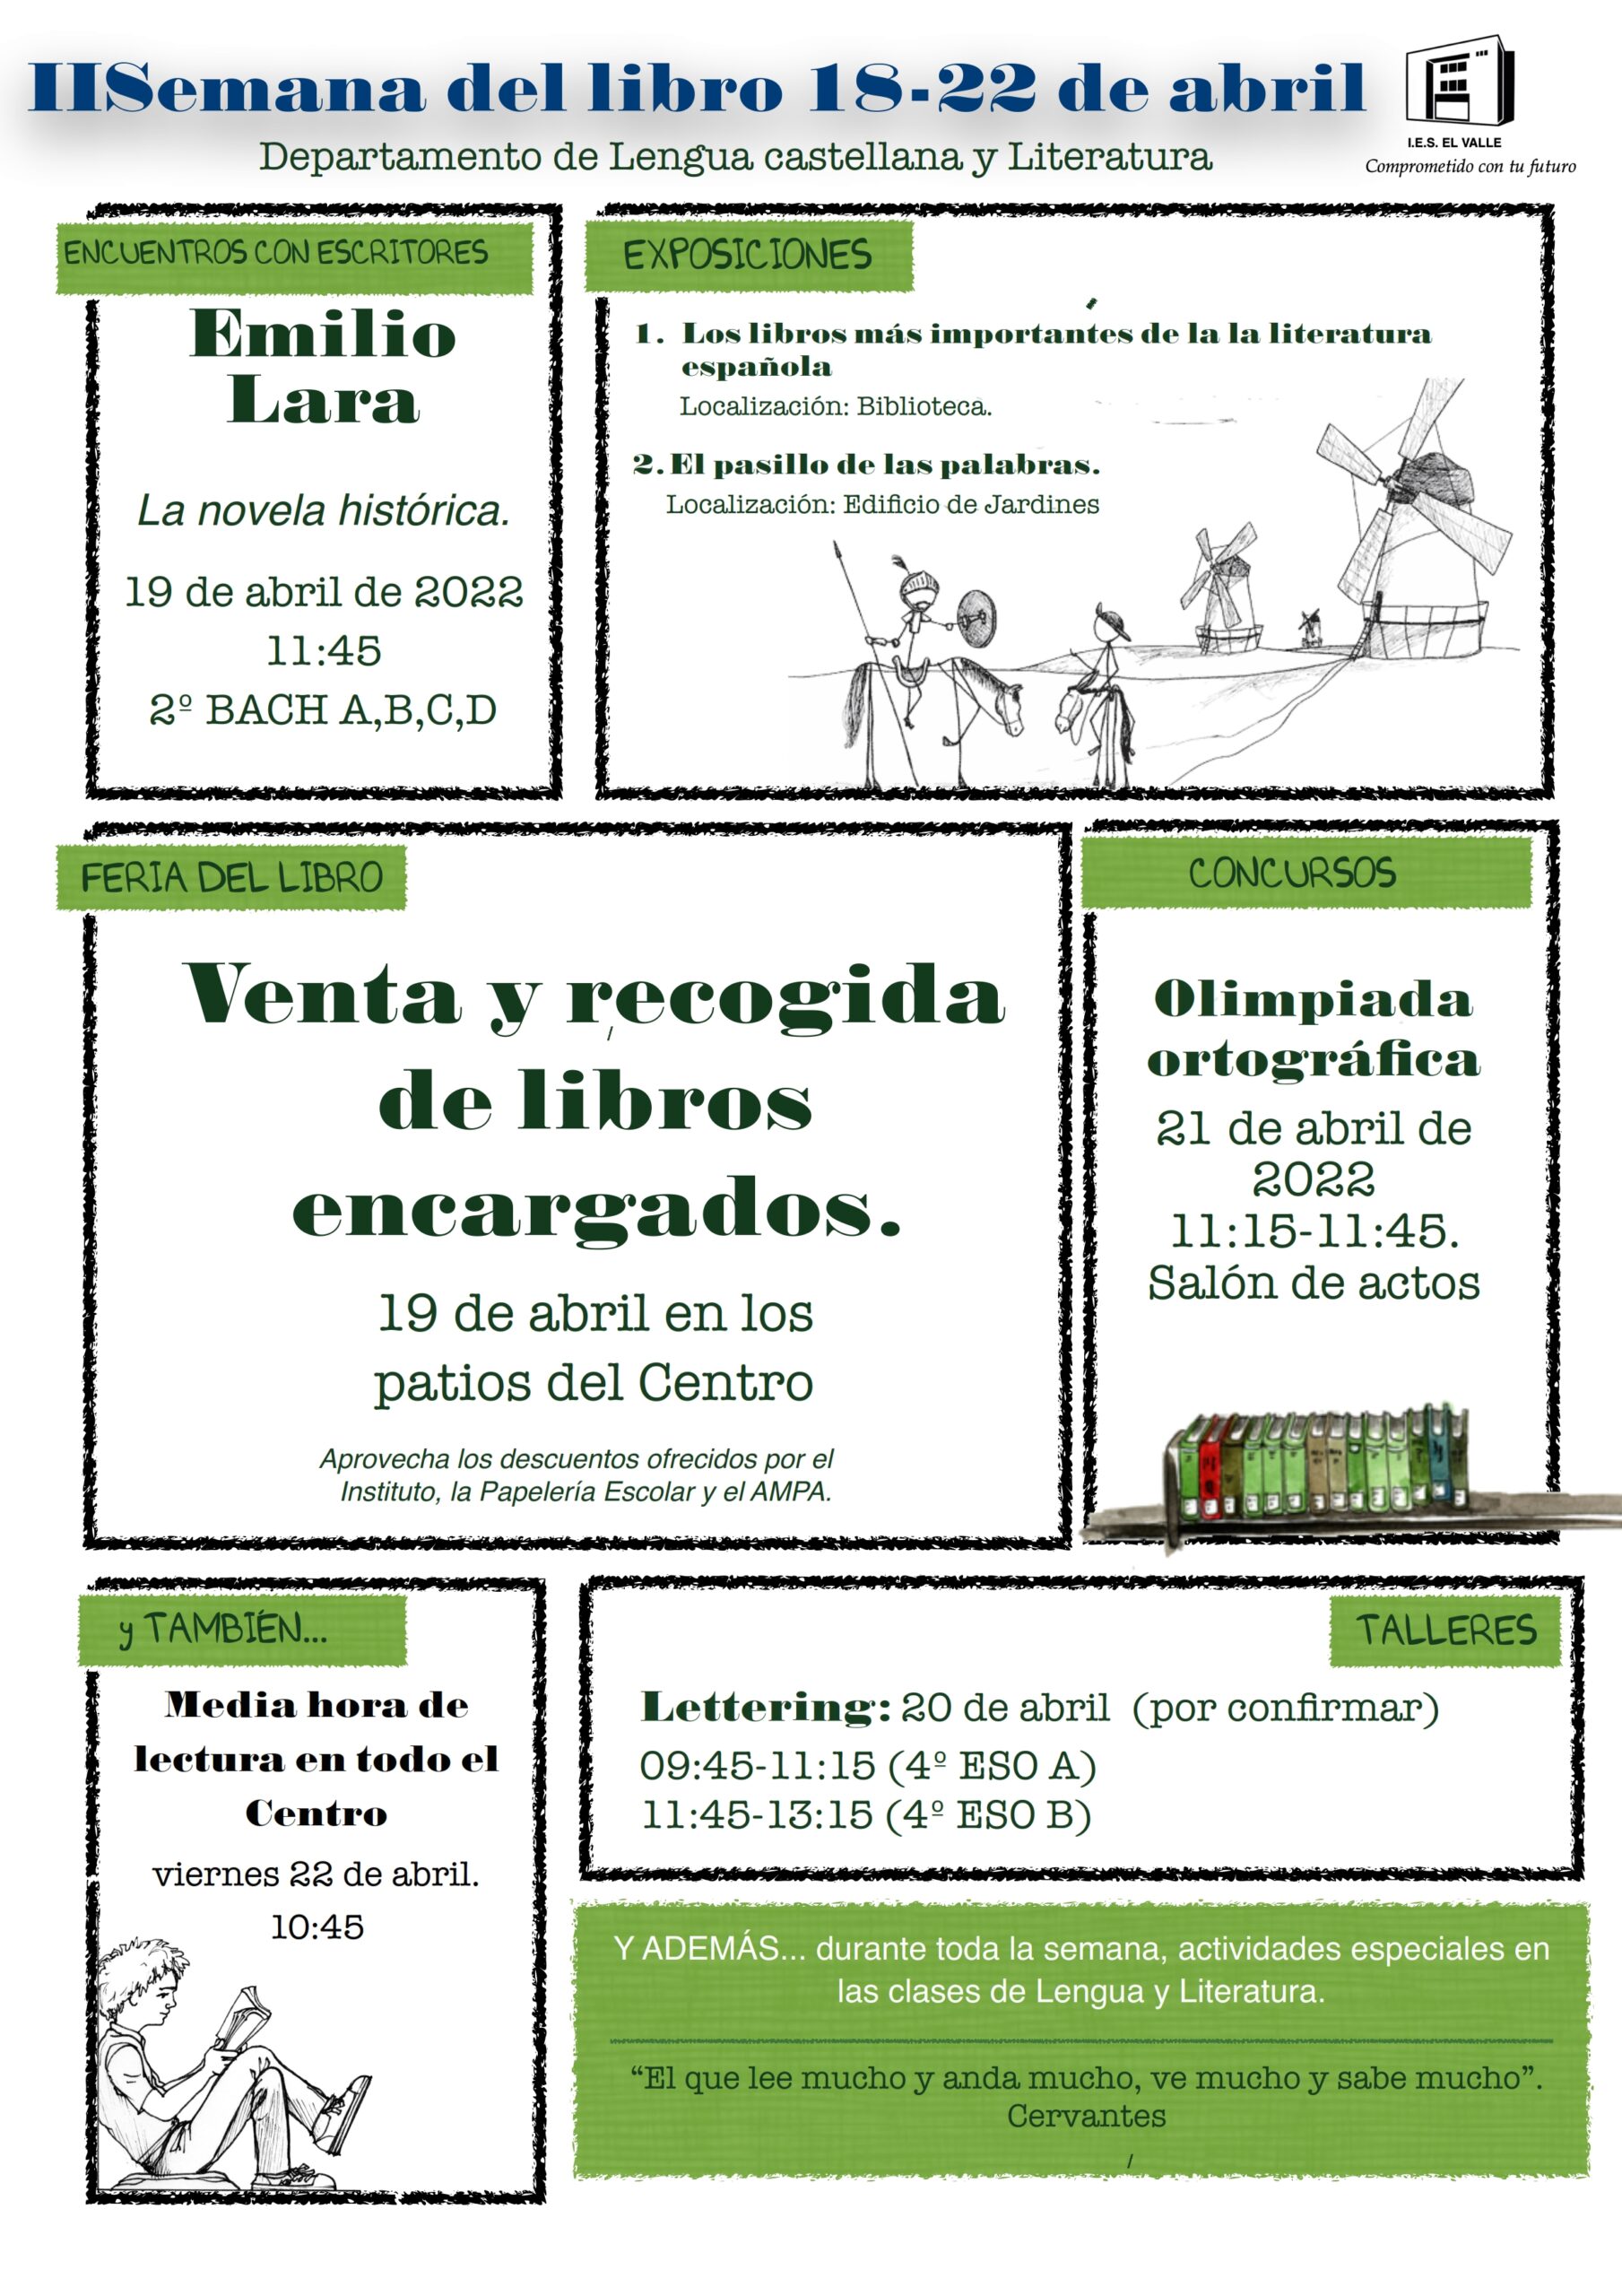 II Semana del libro IES EL VALLE. Departemento de Lengua Castellana y Literatura. 18-22 de abril.